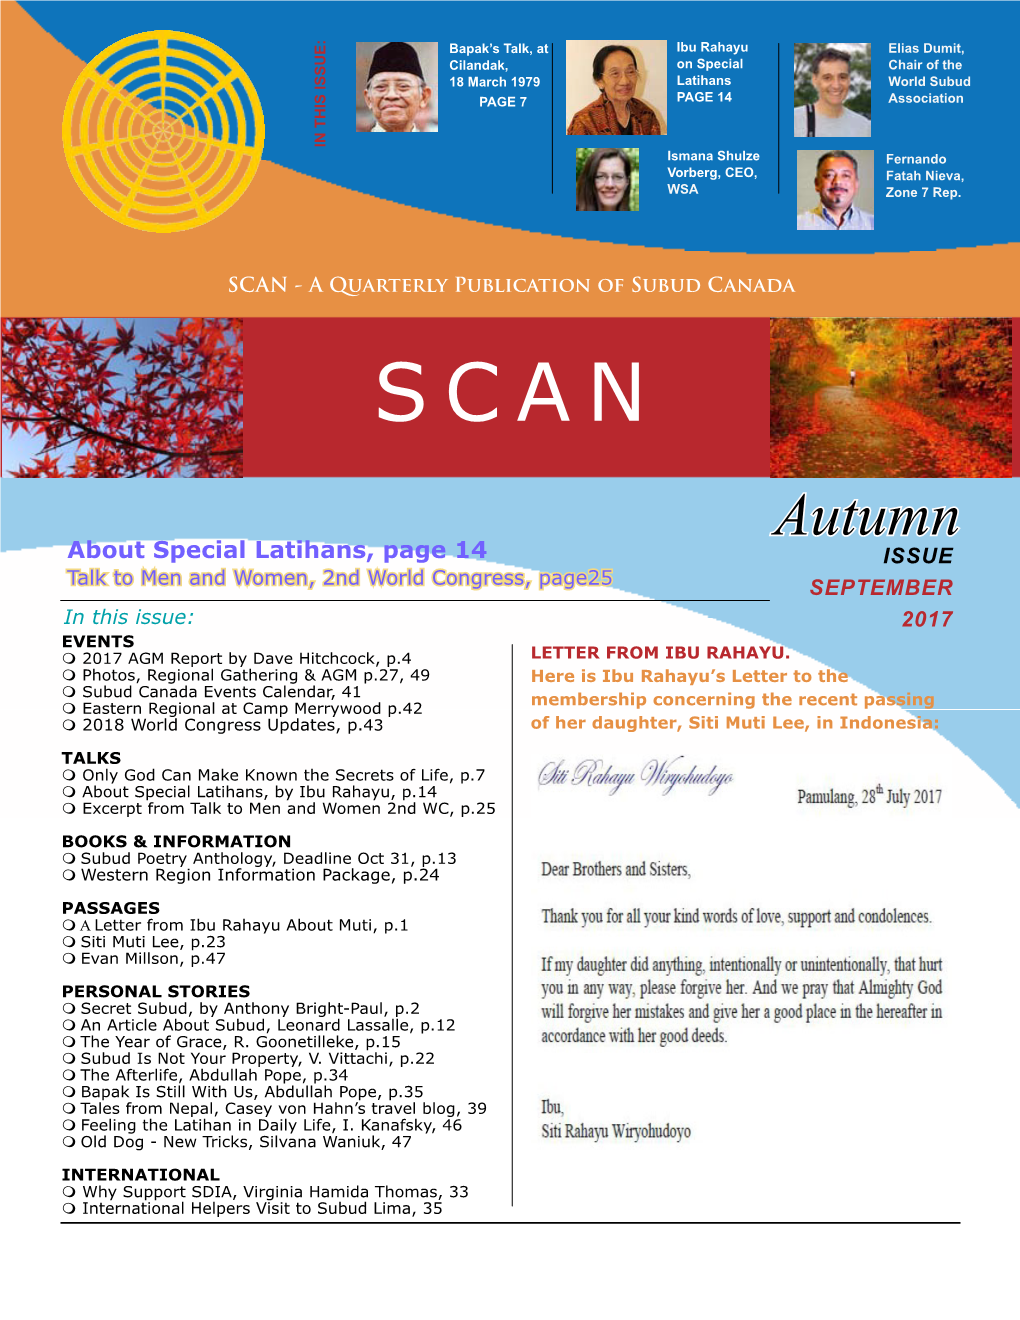 SCAN Autumn Issue 2017